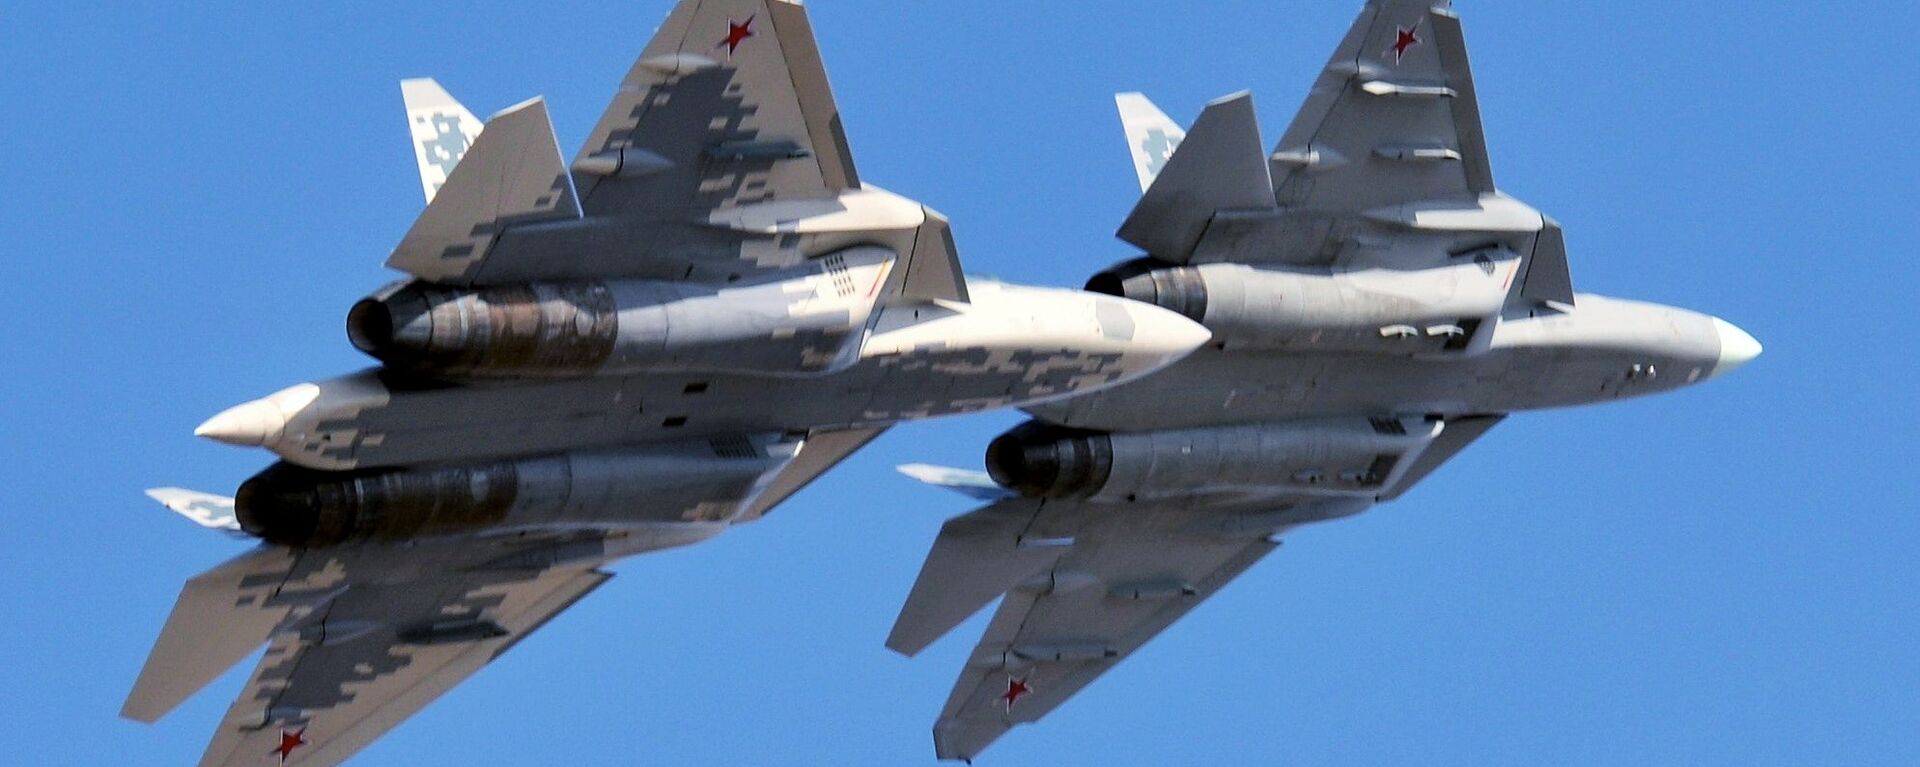 Многофункциональные истребители пятого поколения Су-57 - Sputnik Узбекистан, 1920, 21.01.2021